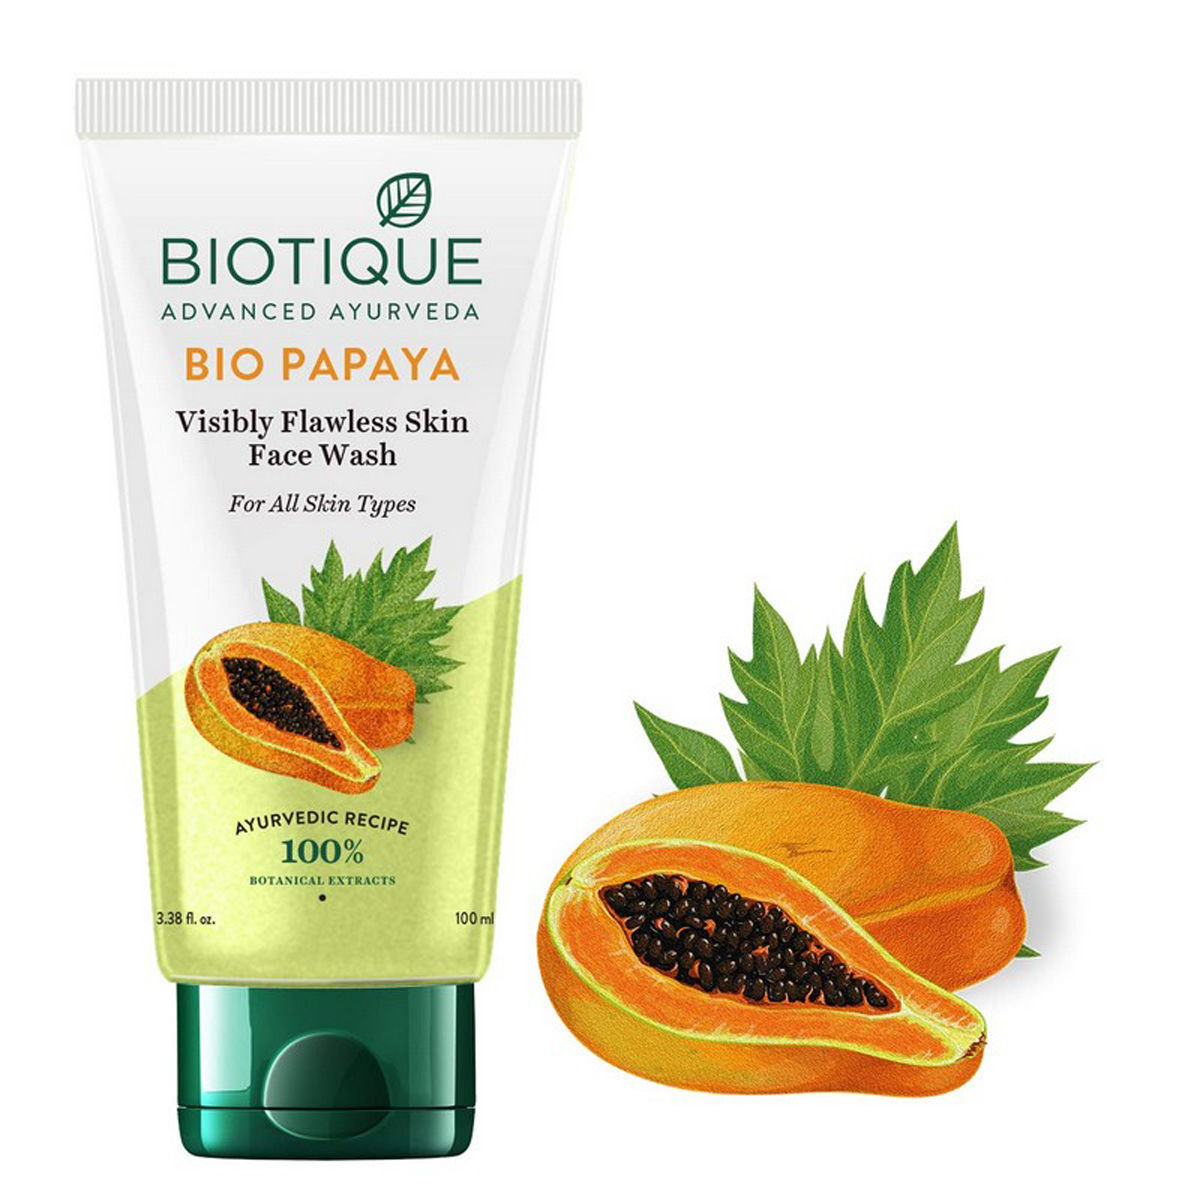 Biotique Bio Papaya Visibly Flawless Skin Face Wash, 100 ml, Pack of 1 